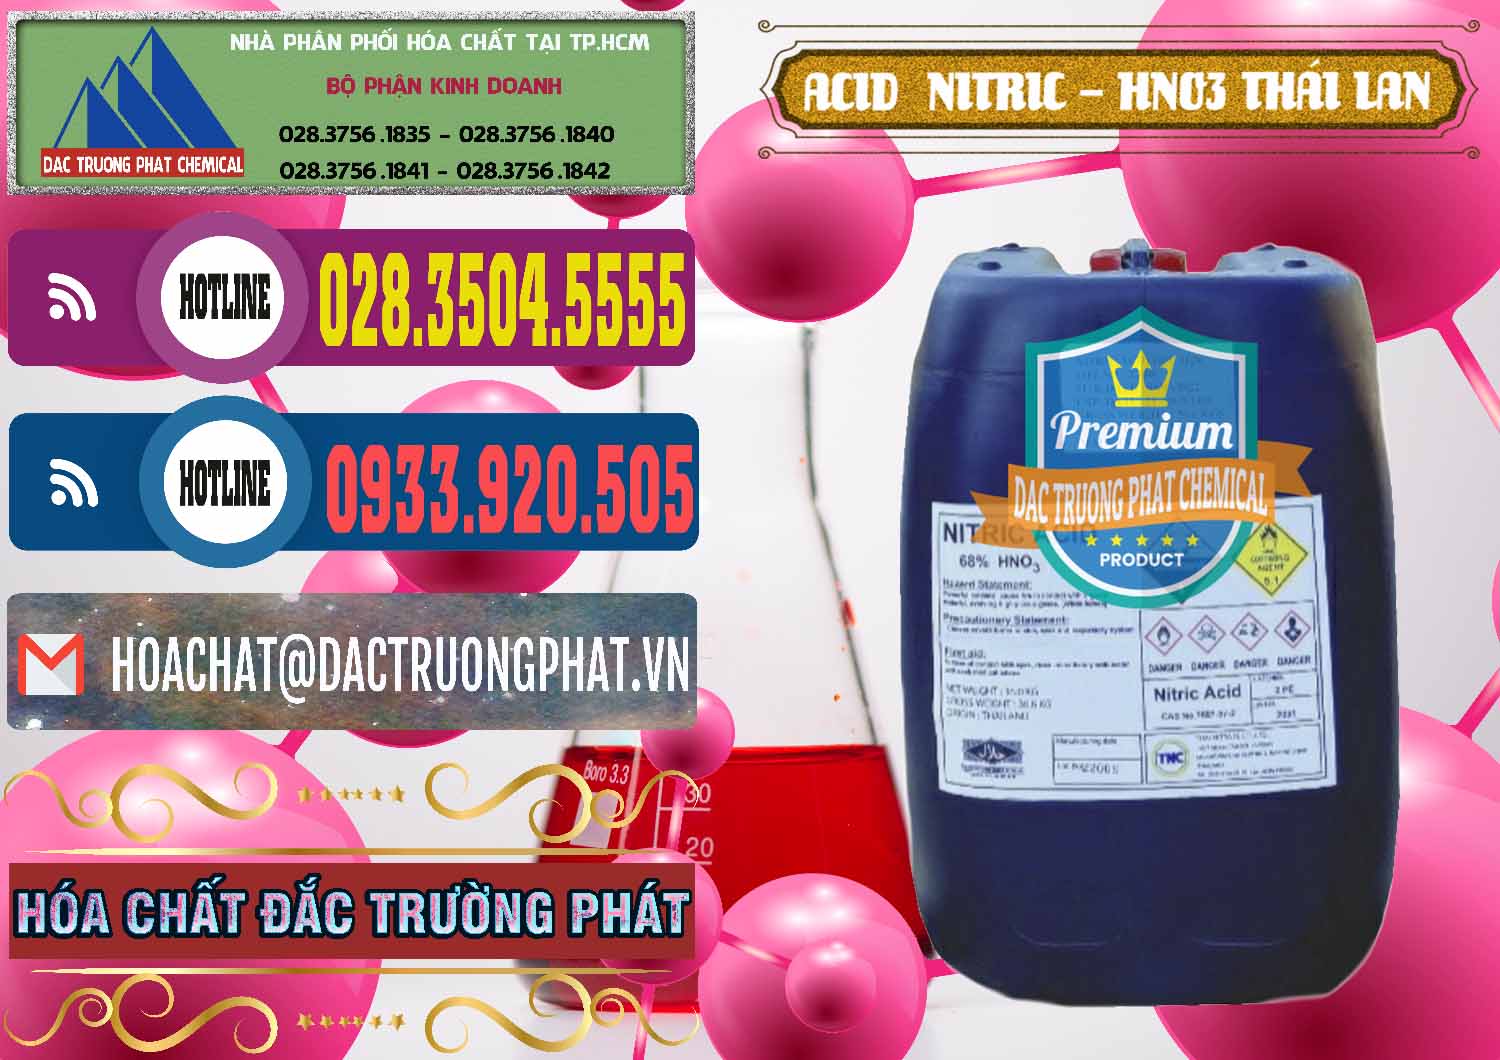 Chuyên bán và cung ứng Acid Nitric – Axit Nitric HNO3 Thái Lan Thailand - 0344 - Nơi phân phối và cung cấp hóa chất tại TP.HCM - muabanhoachat.com.vn